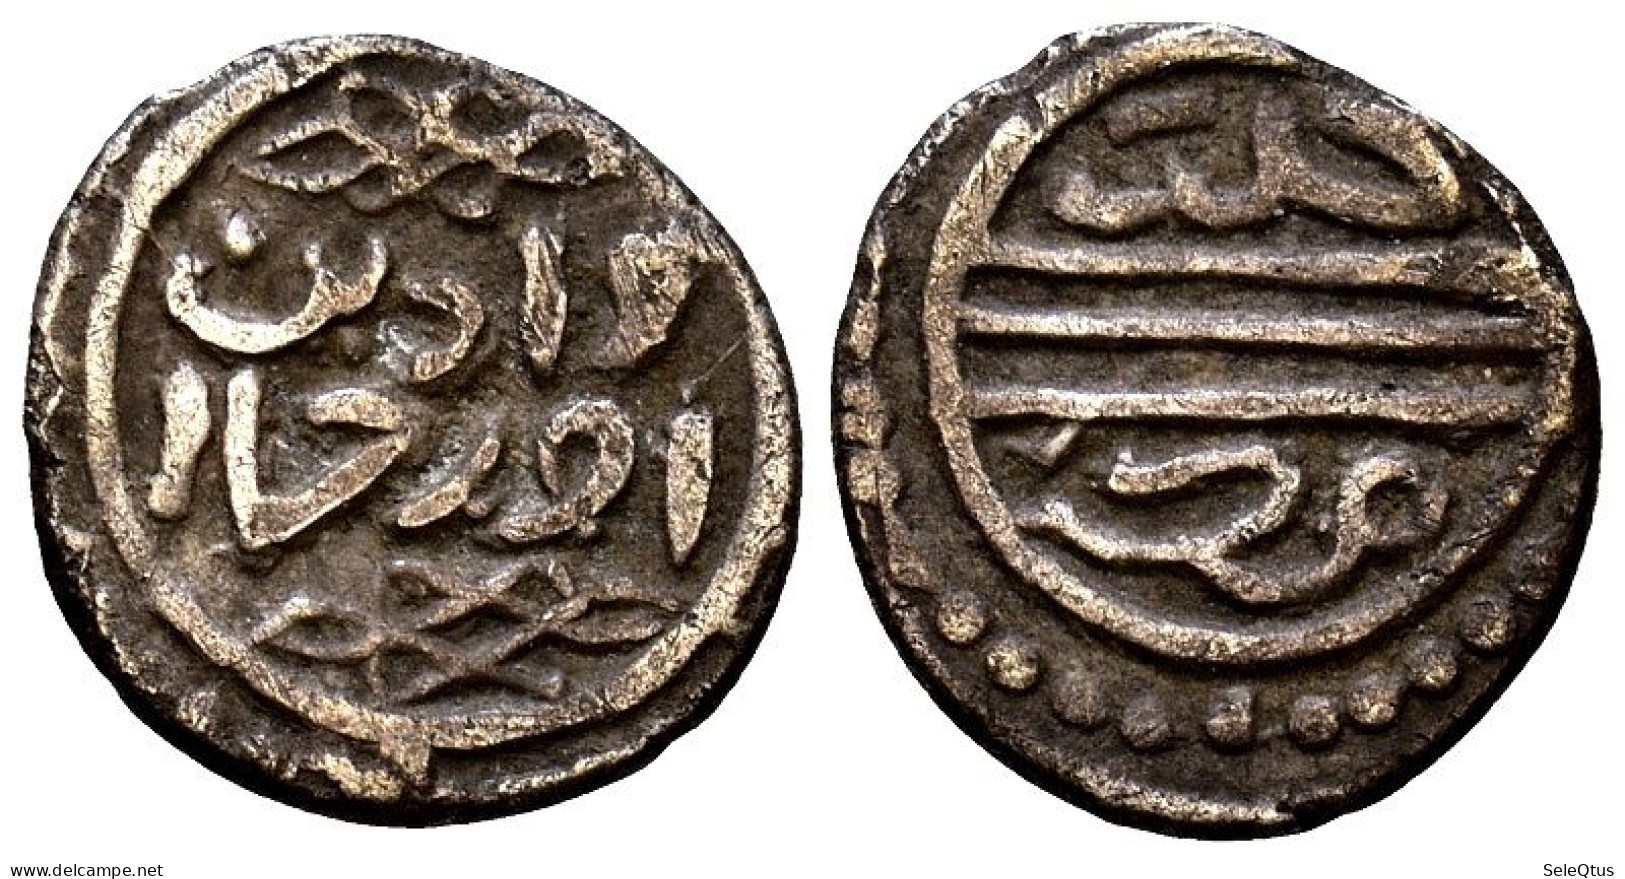 Monedas Antiguas - Ancient Coins (00119-007-1051) - Islámicas